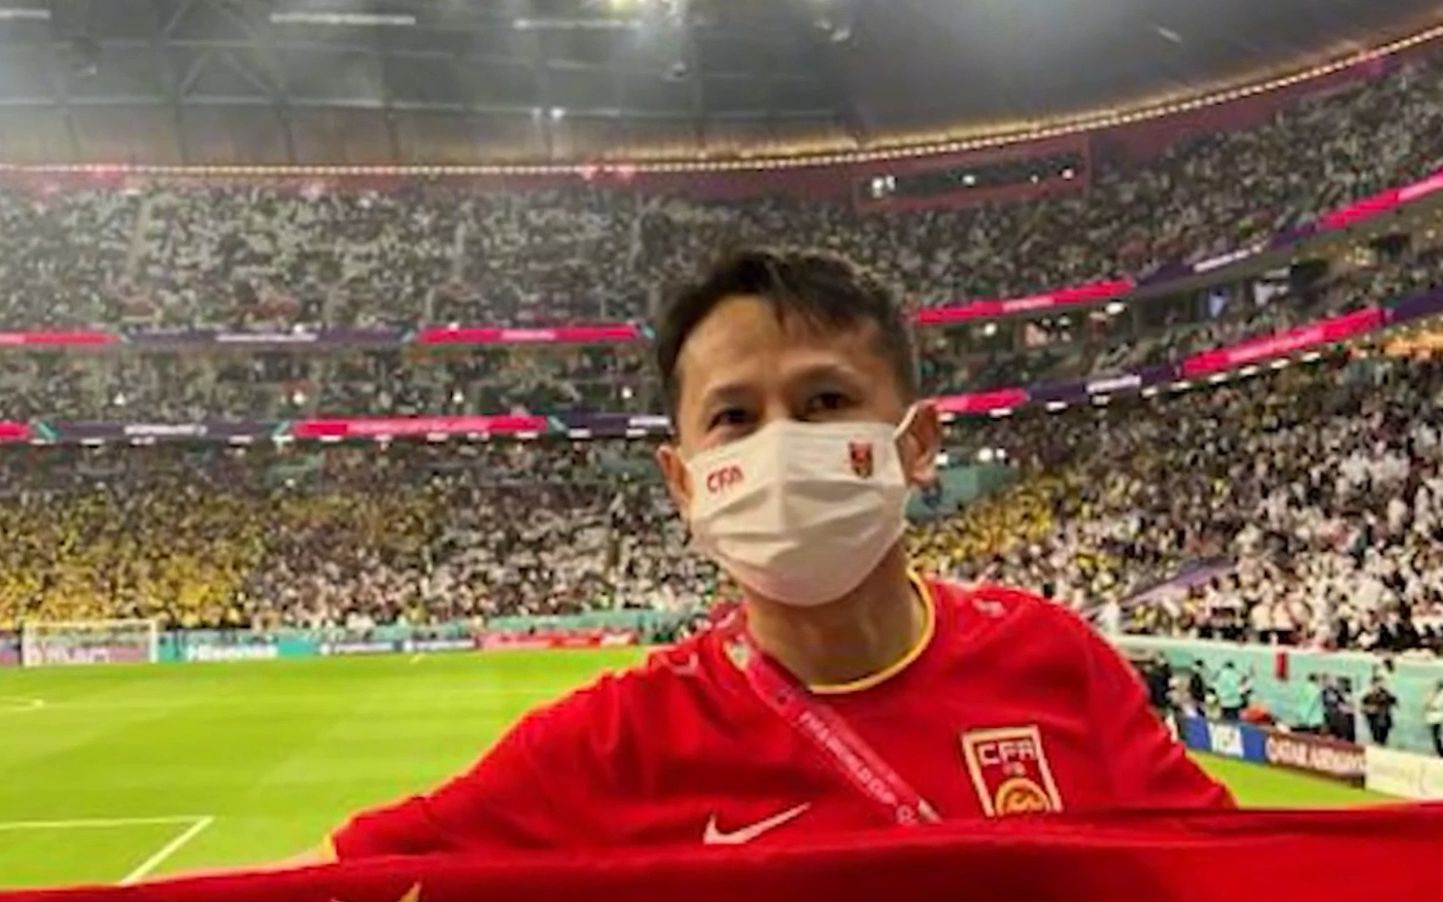 “退钱哥”在世界杯戴口罩展示五星红旗，却被骂博眼球丢人现眼